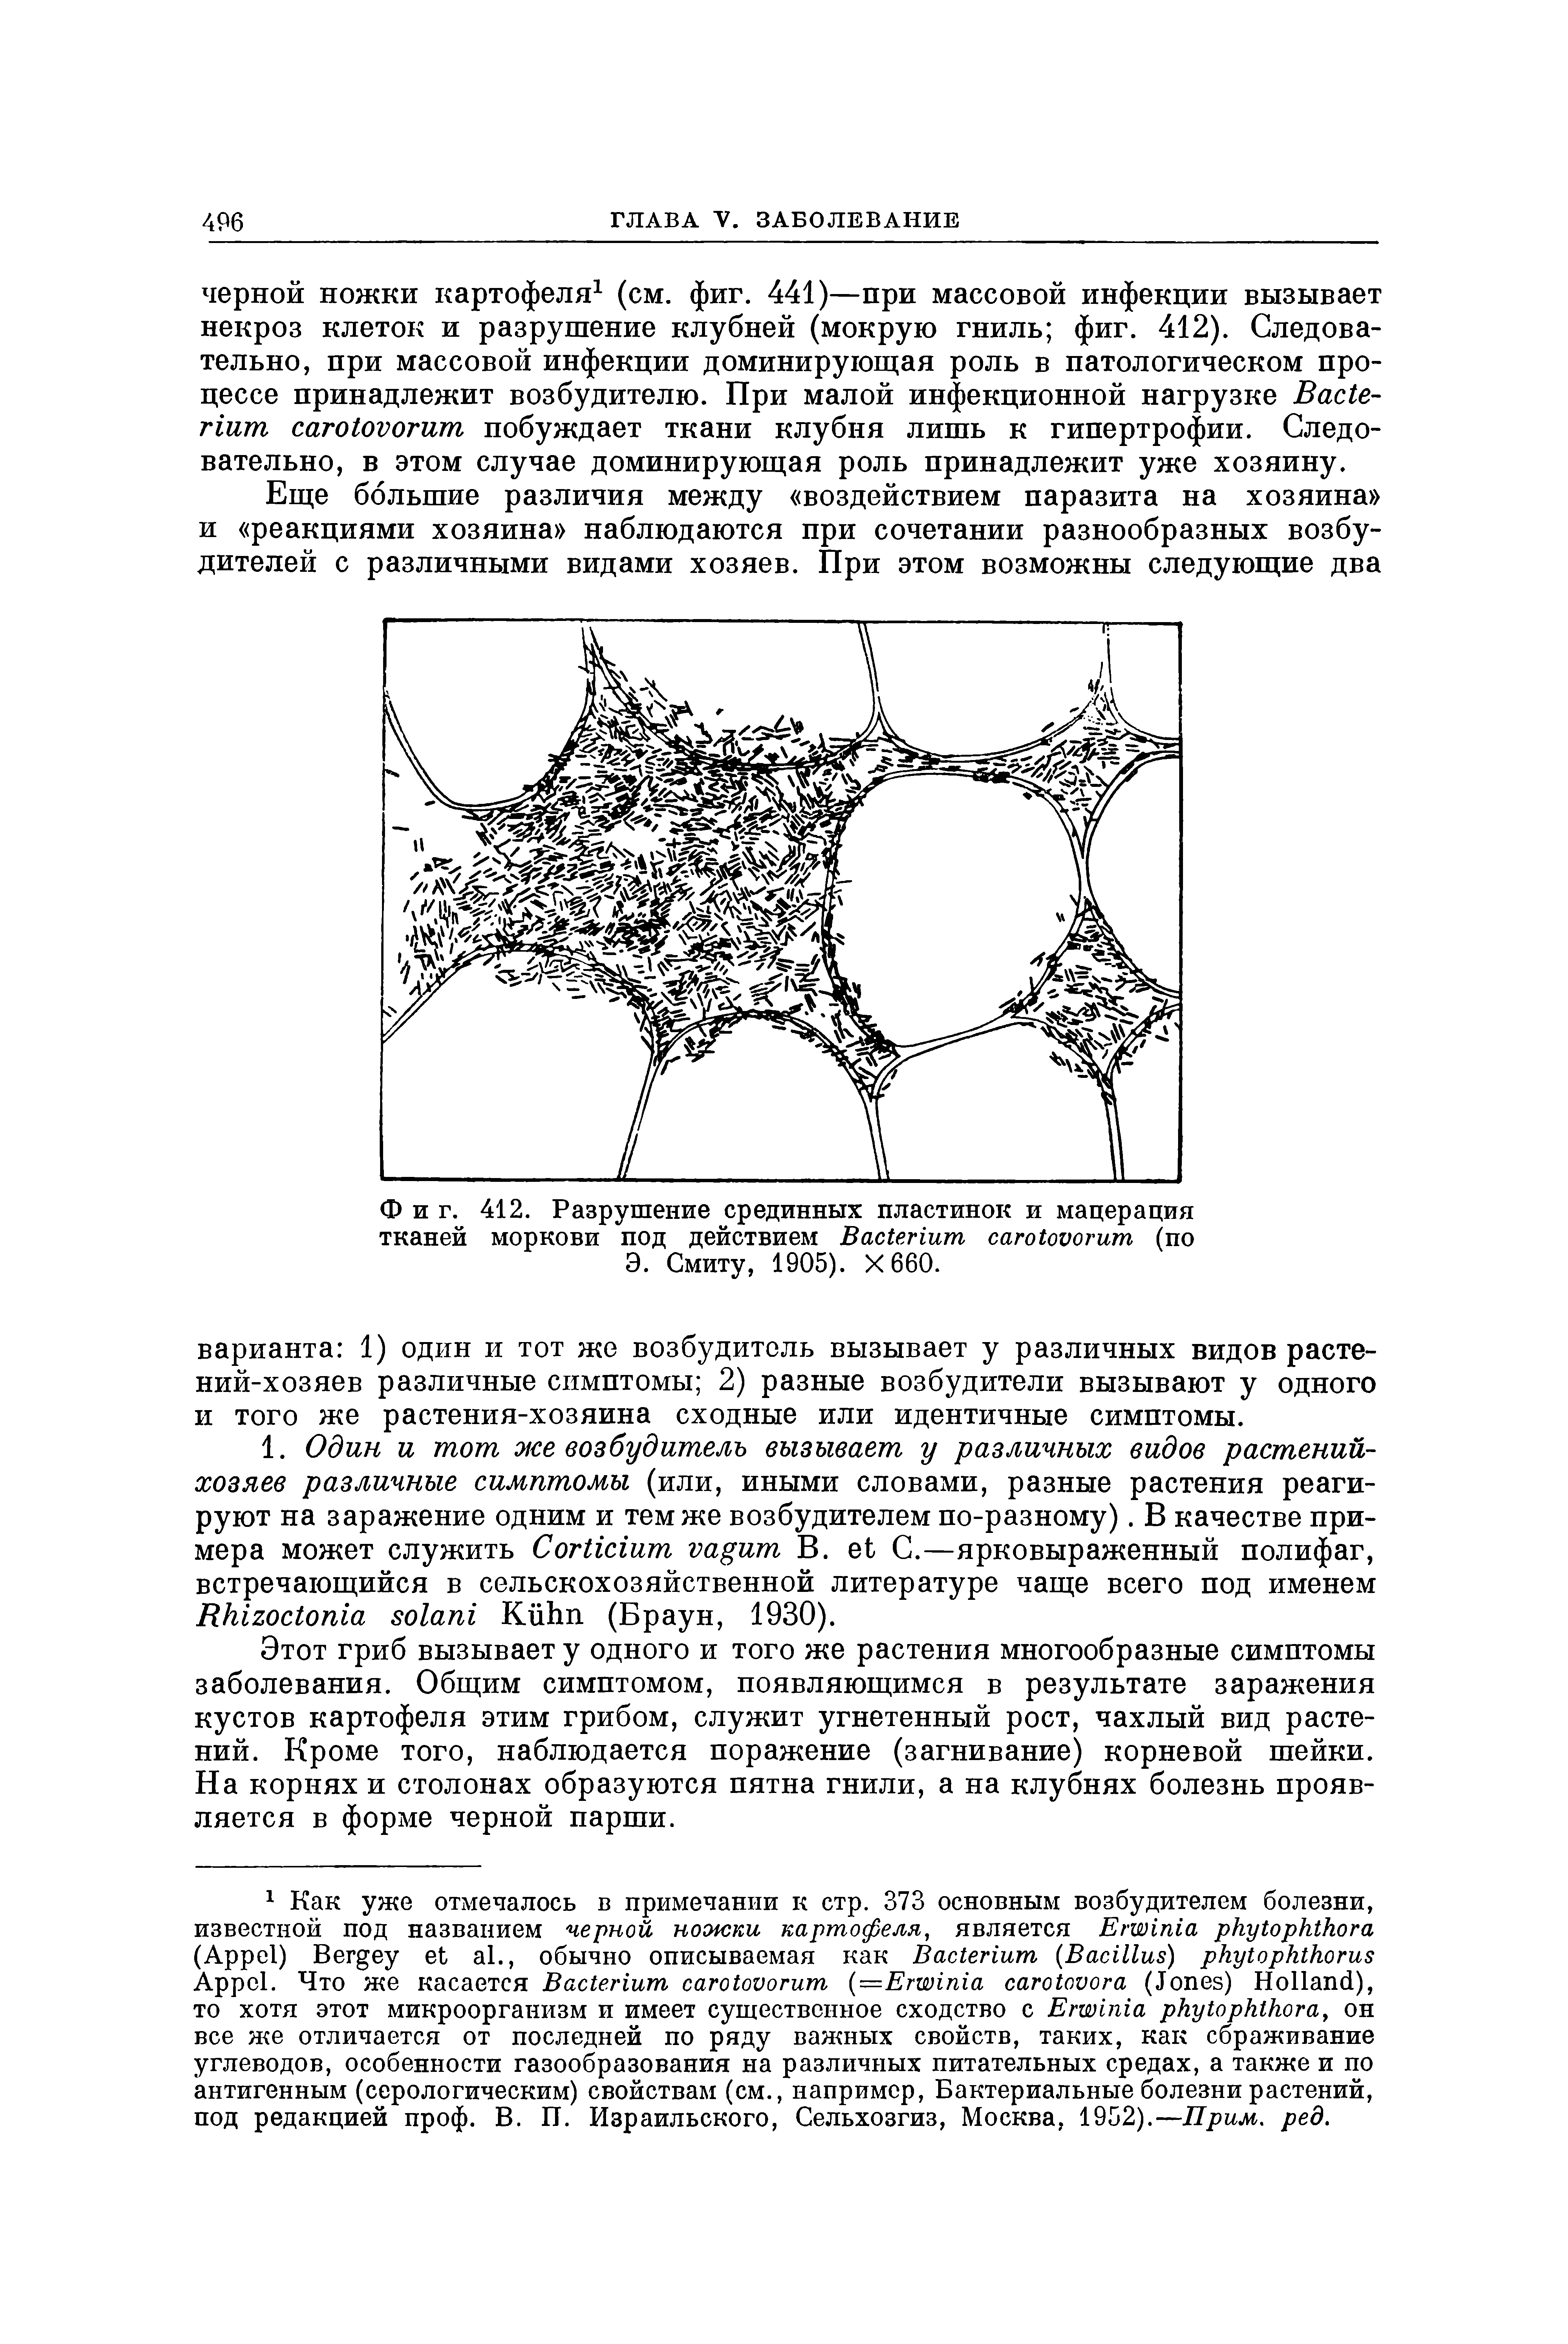 Фиг. 412. Разрушение срединных пластинок и мацерация тканей моркови под действием B (по Э. Смиту, 1905). Х66О.